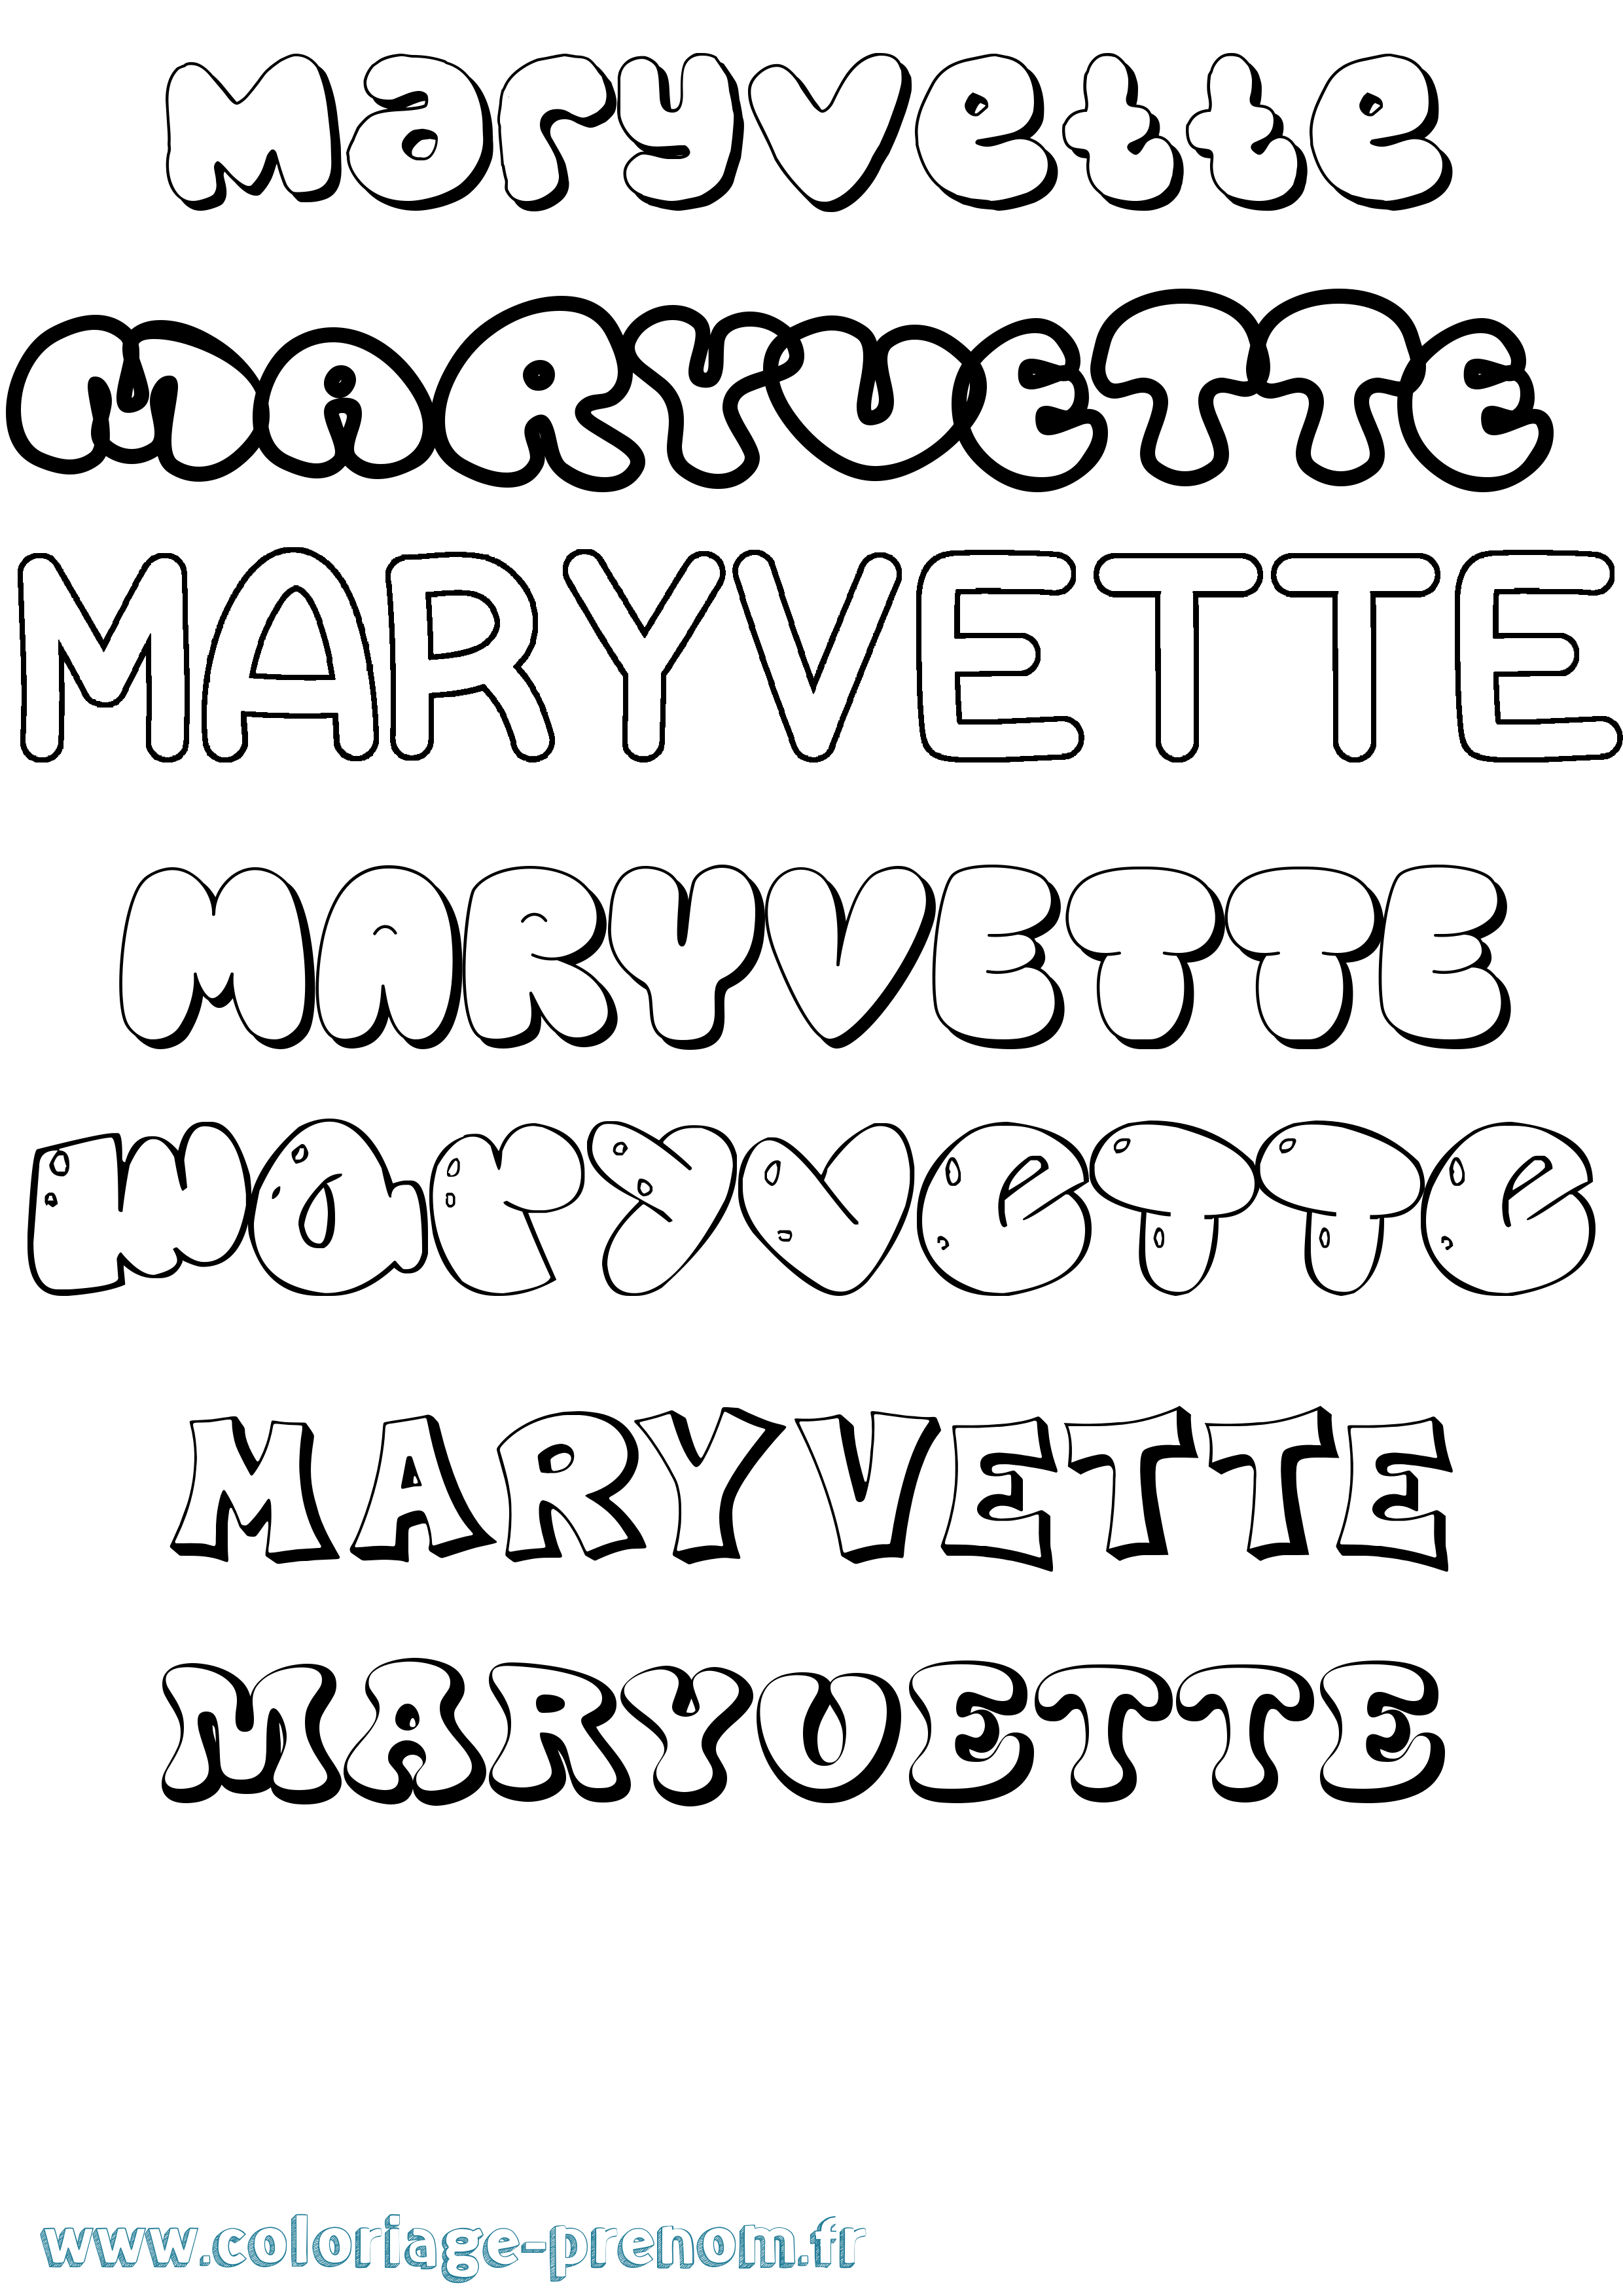 Coloriage prénom Maryvette Bubble